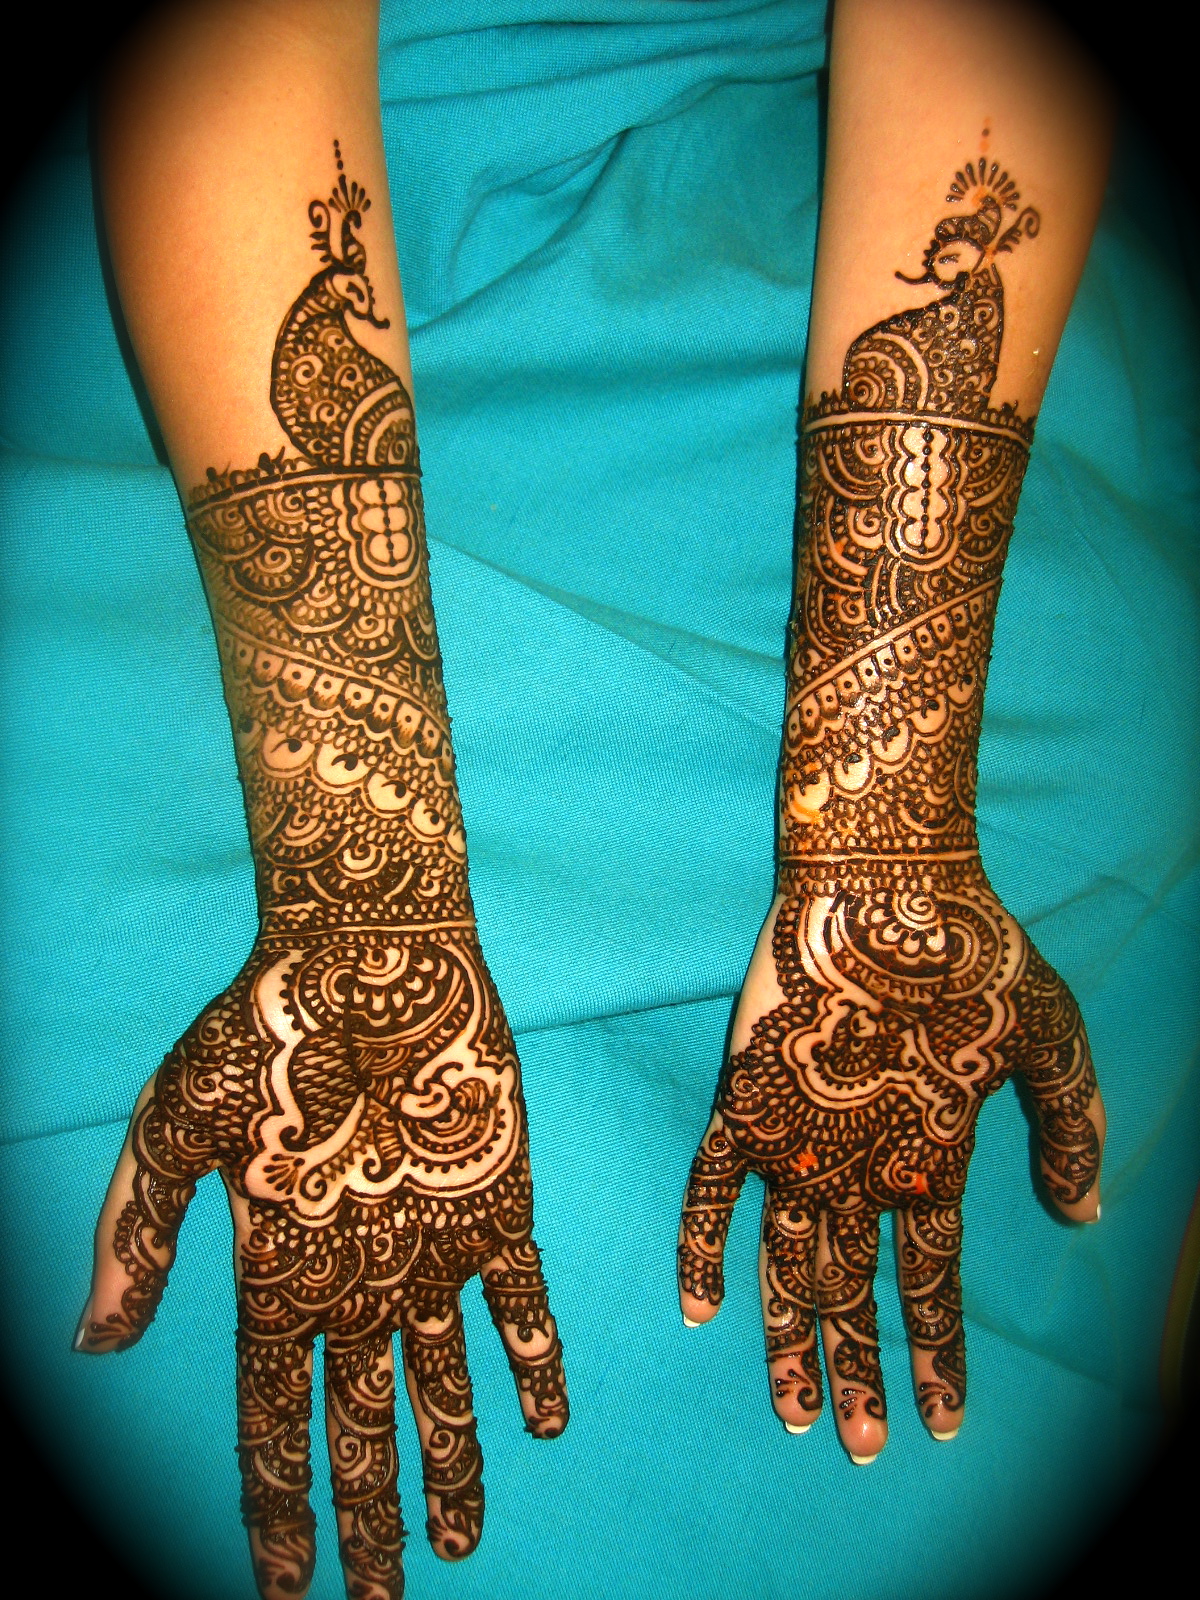 Bridal Mehndi Designs for Hands 2013 | Mehndi Desings 2013